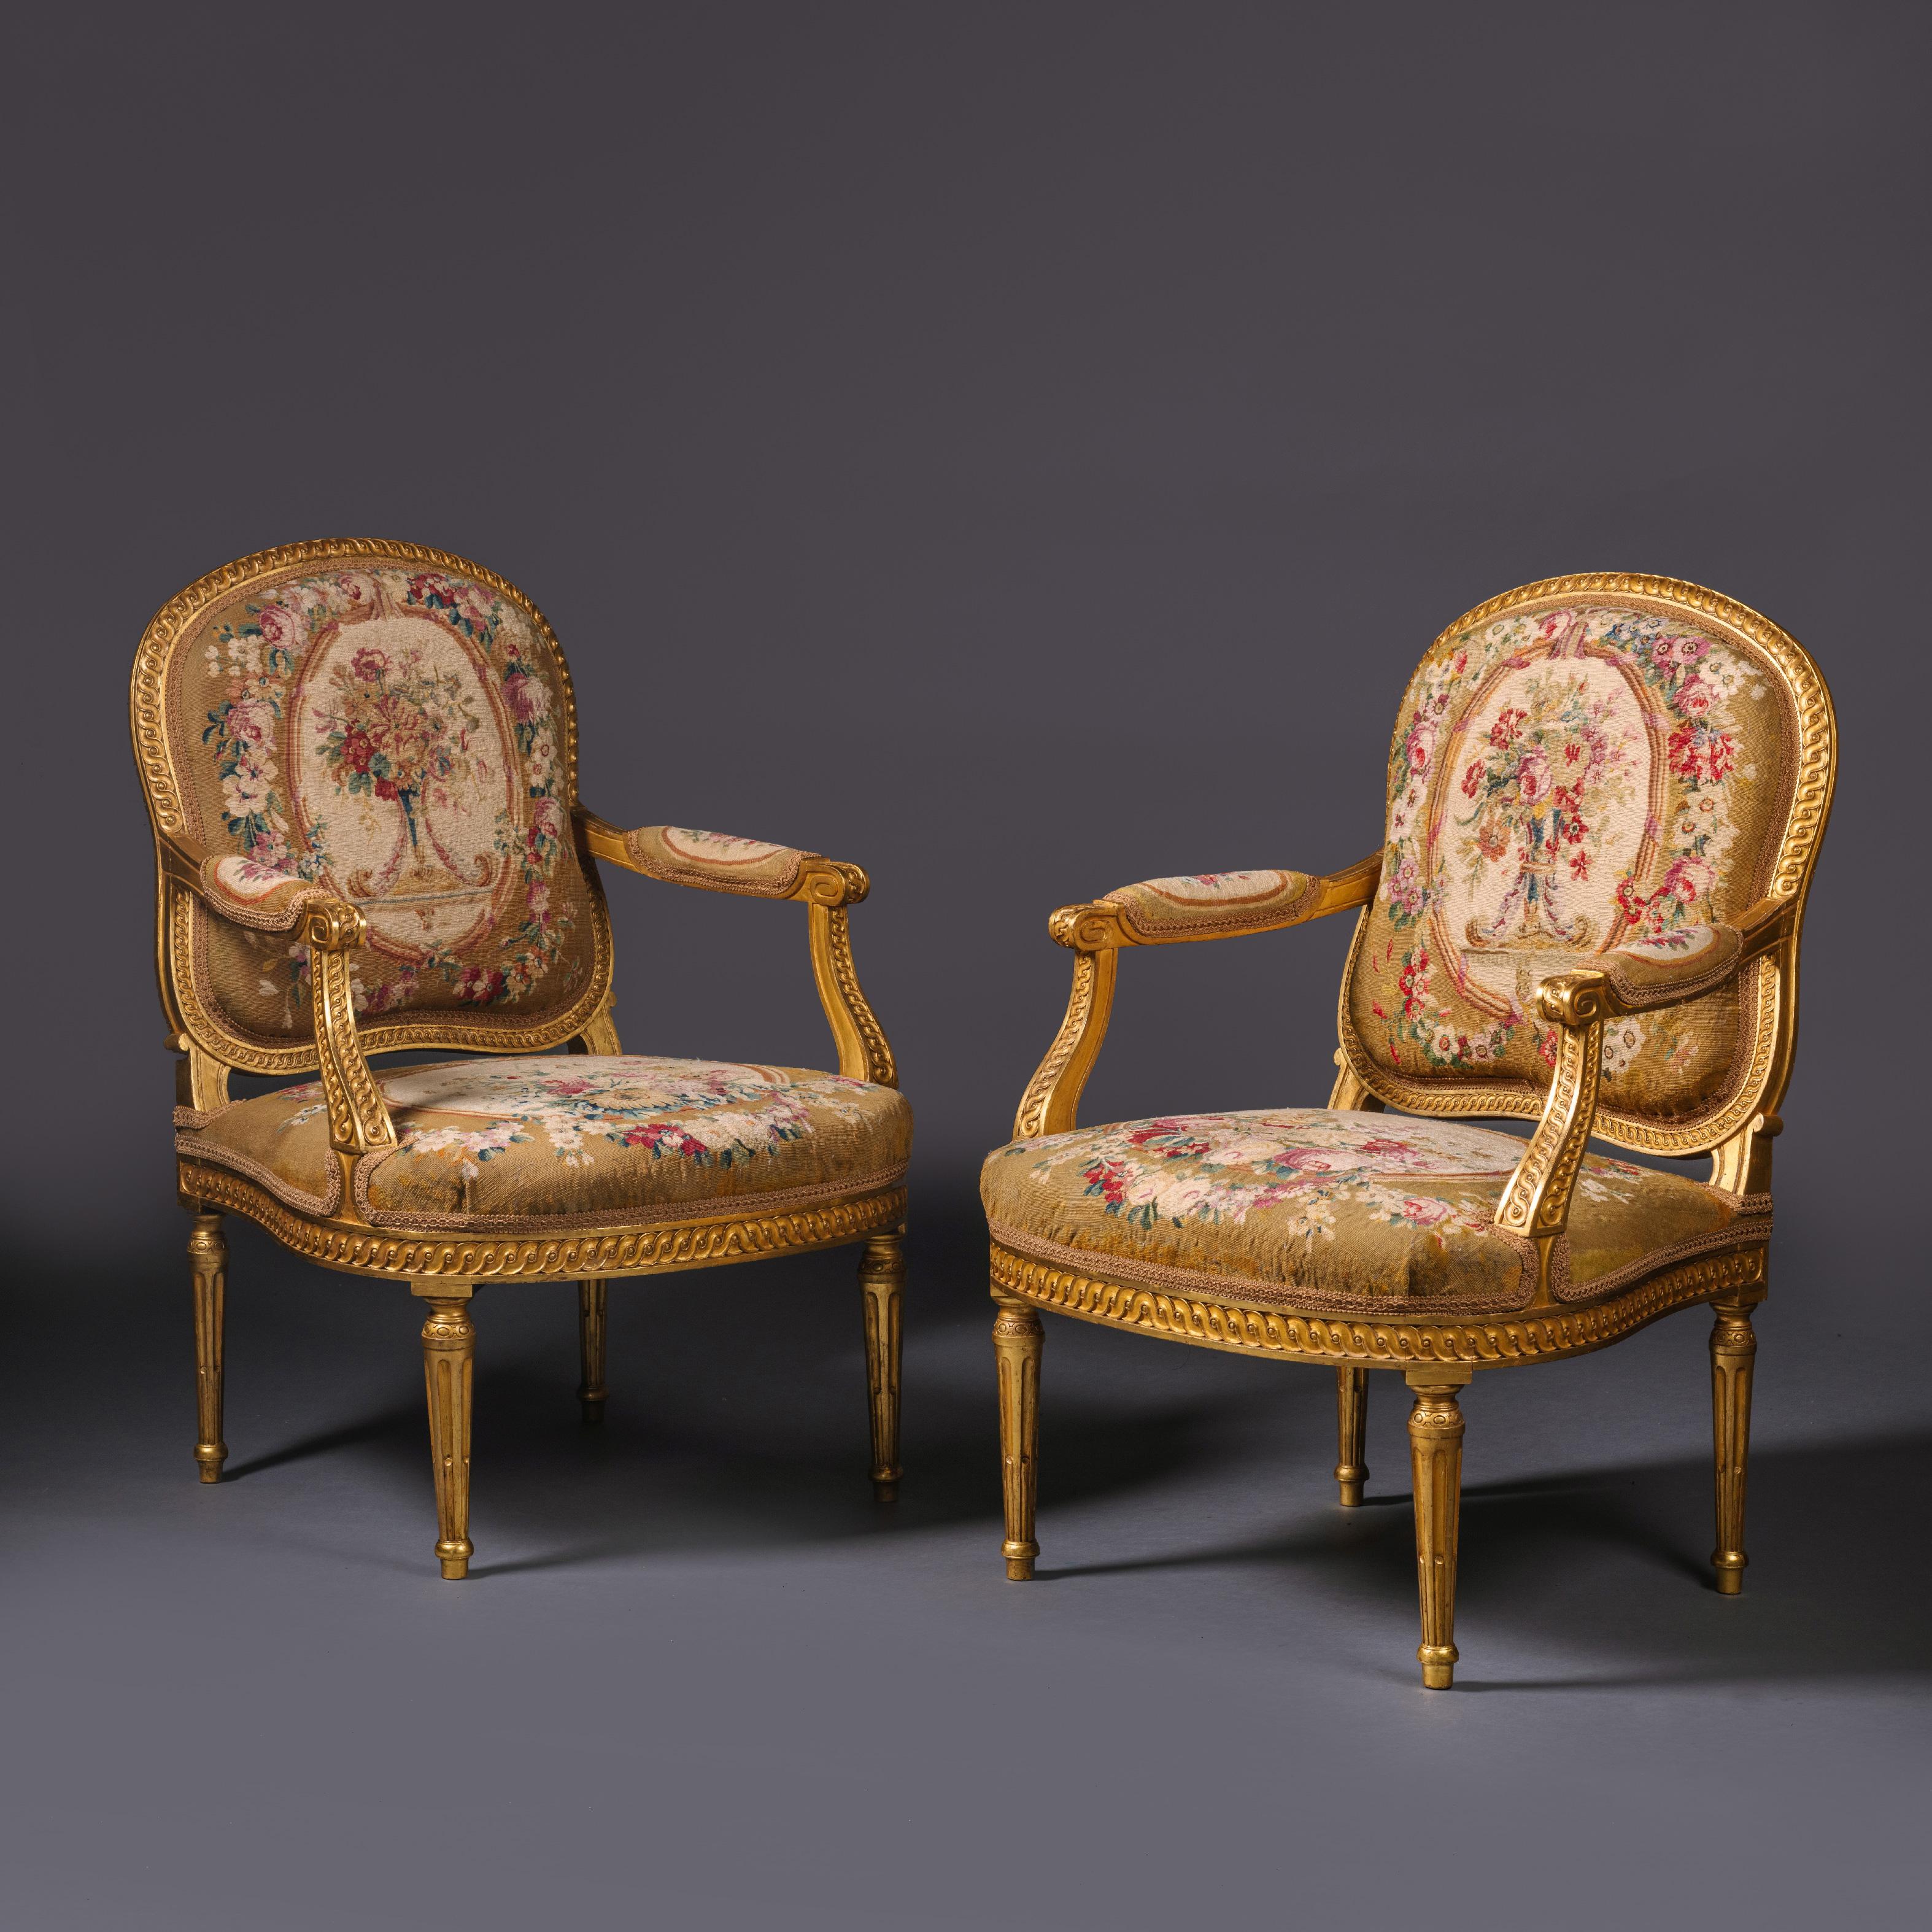 Ein Paar von Louis XVI Stil vergoldetem Holz und Wandteppich fauteuils.

Der Wandteppich stammt aus dem 18. Jahrhundert und wird der Manufaktur von Beauvais zugeschrieben. Die Rahmen sind fein geschnitzt und mit guillochierten Bändern versehen.